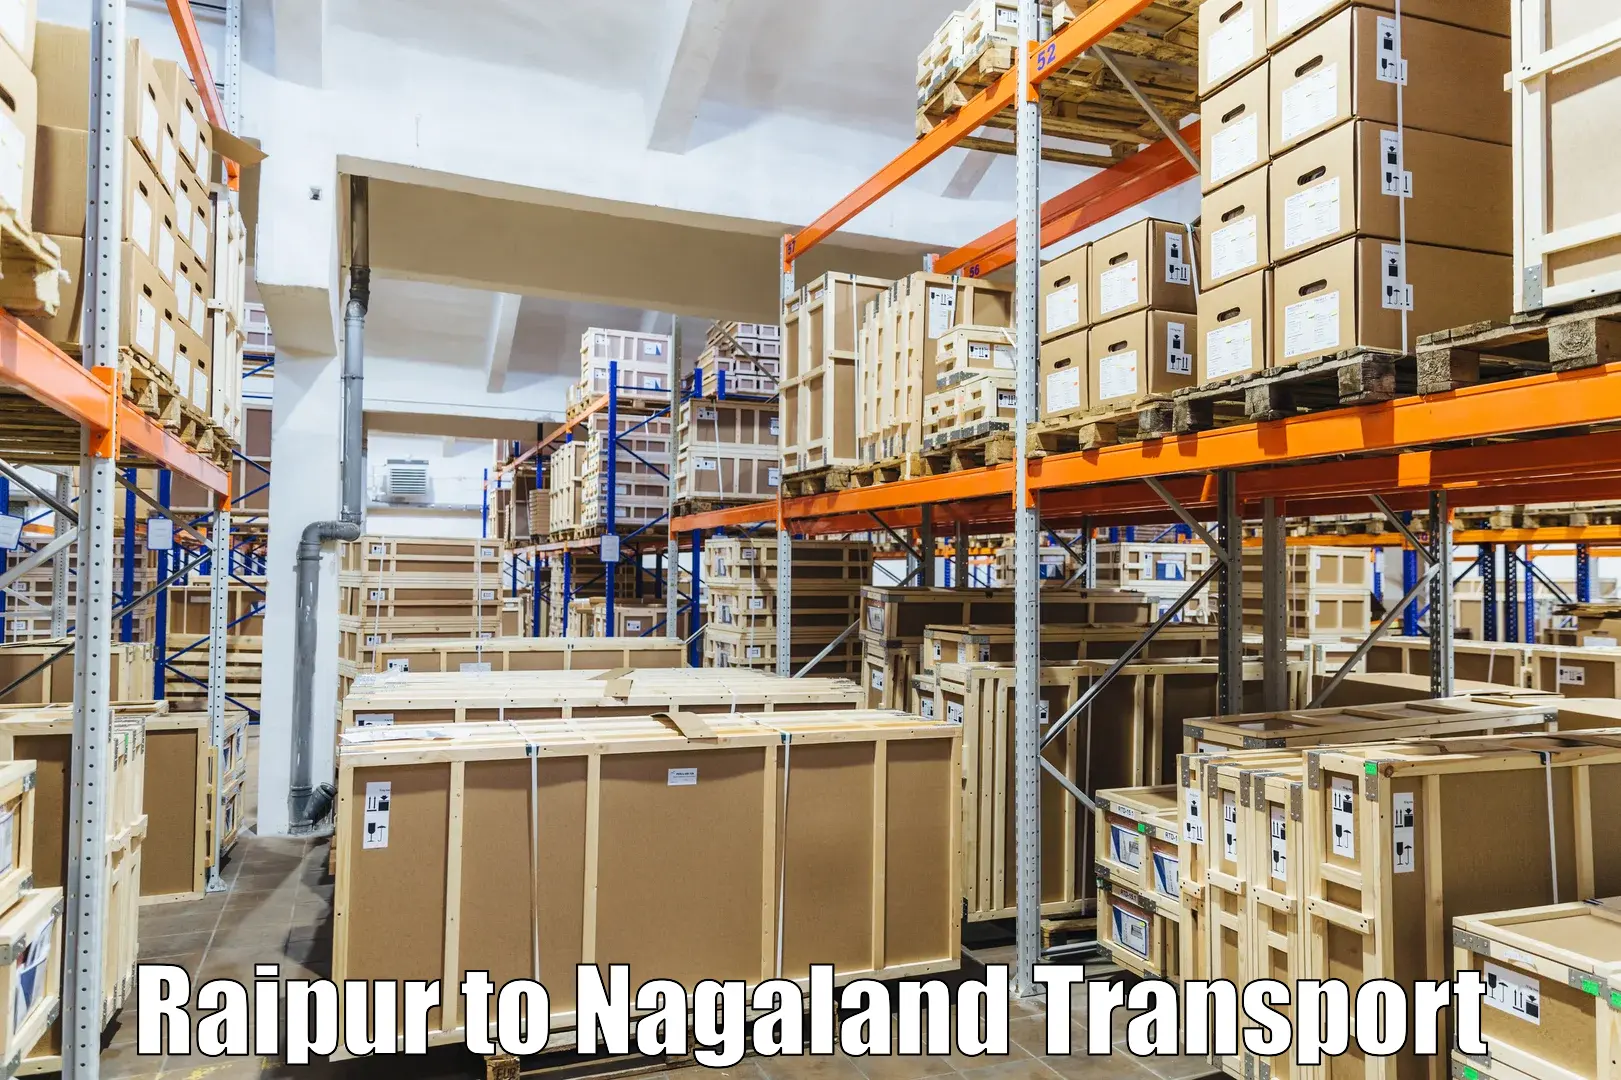 Door to door transport services Raipur to Nagaland